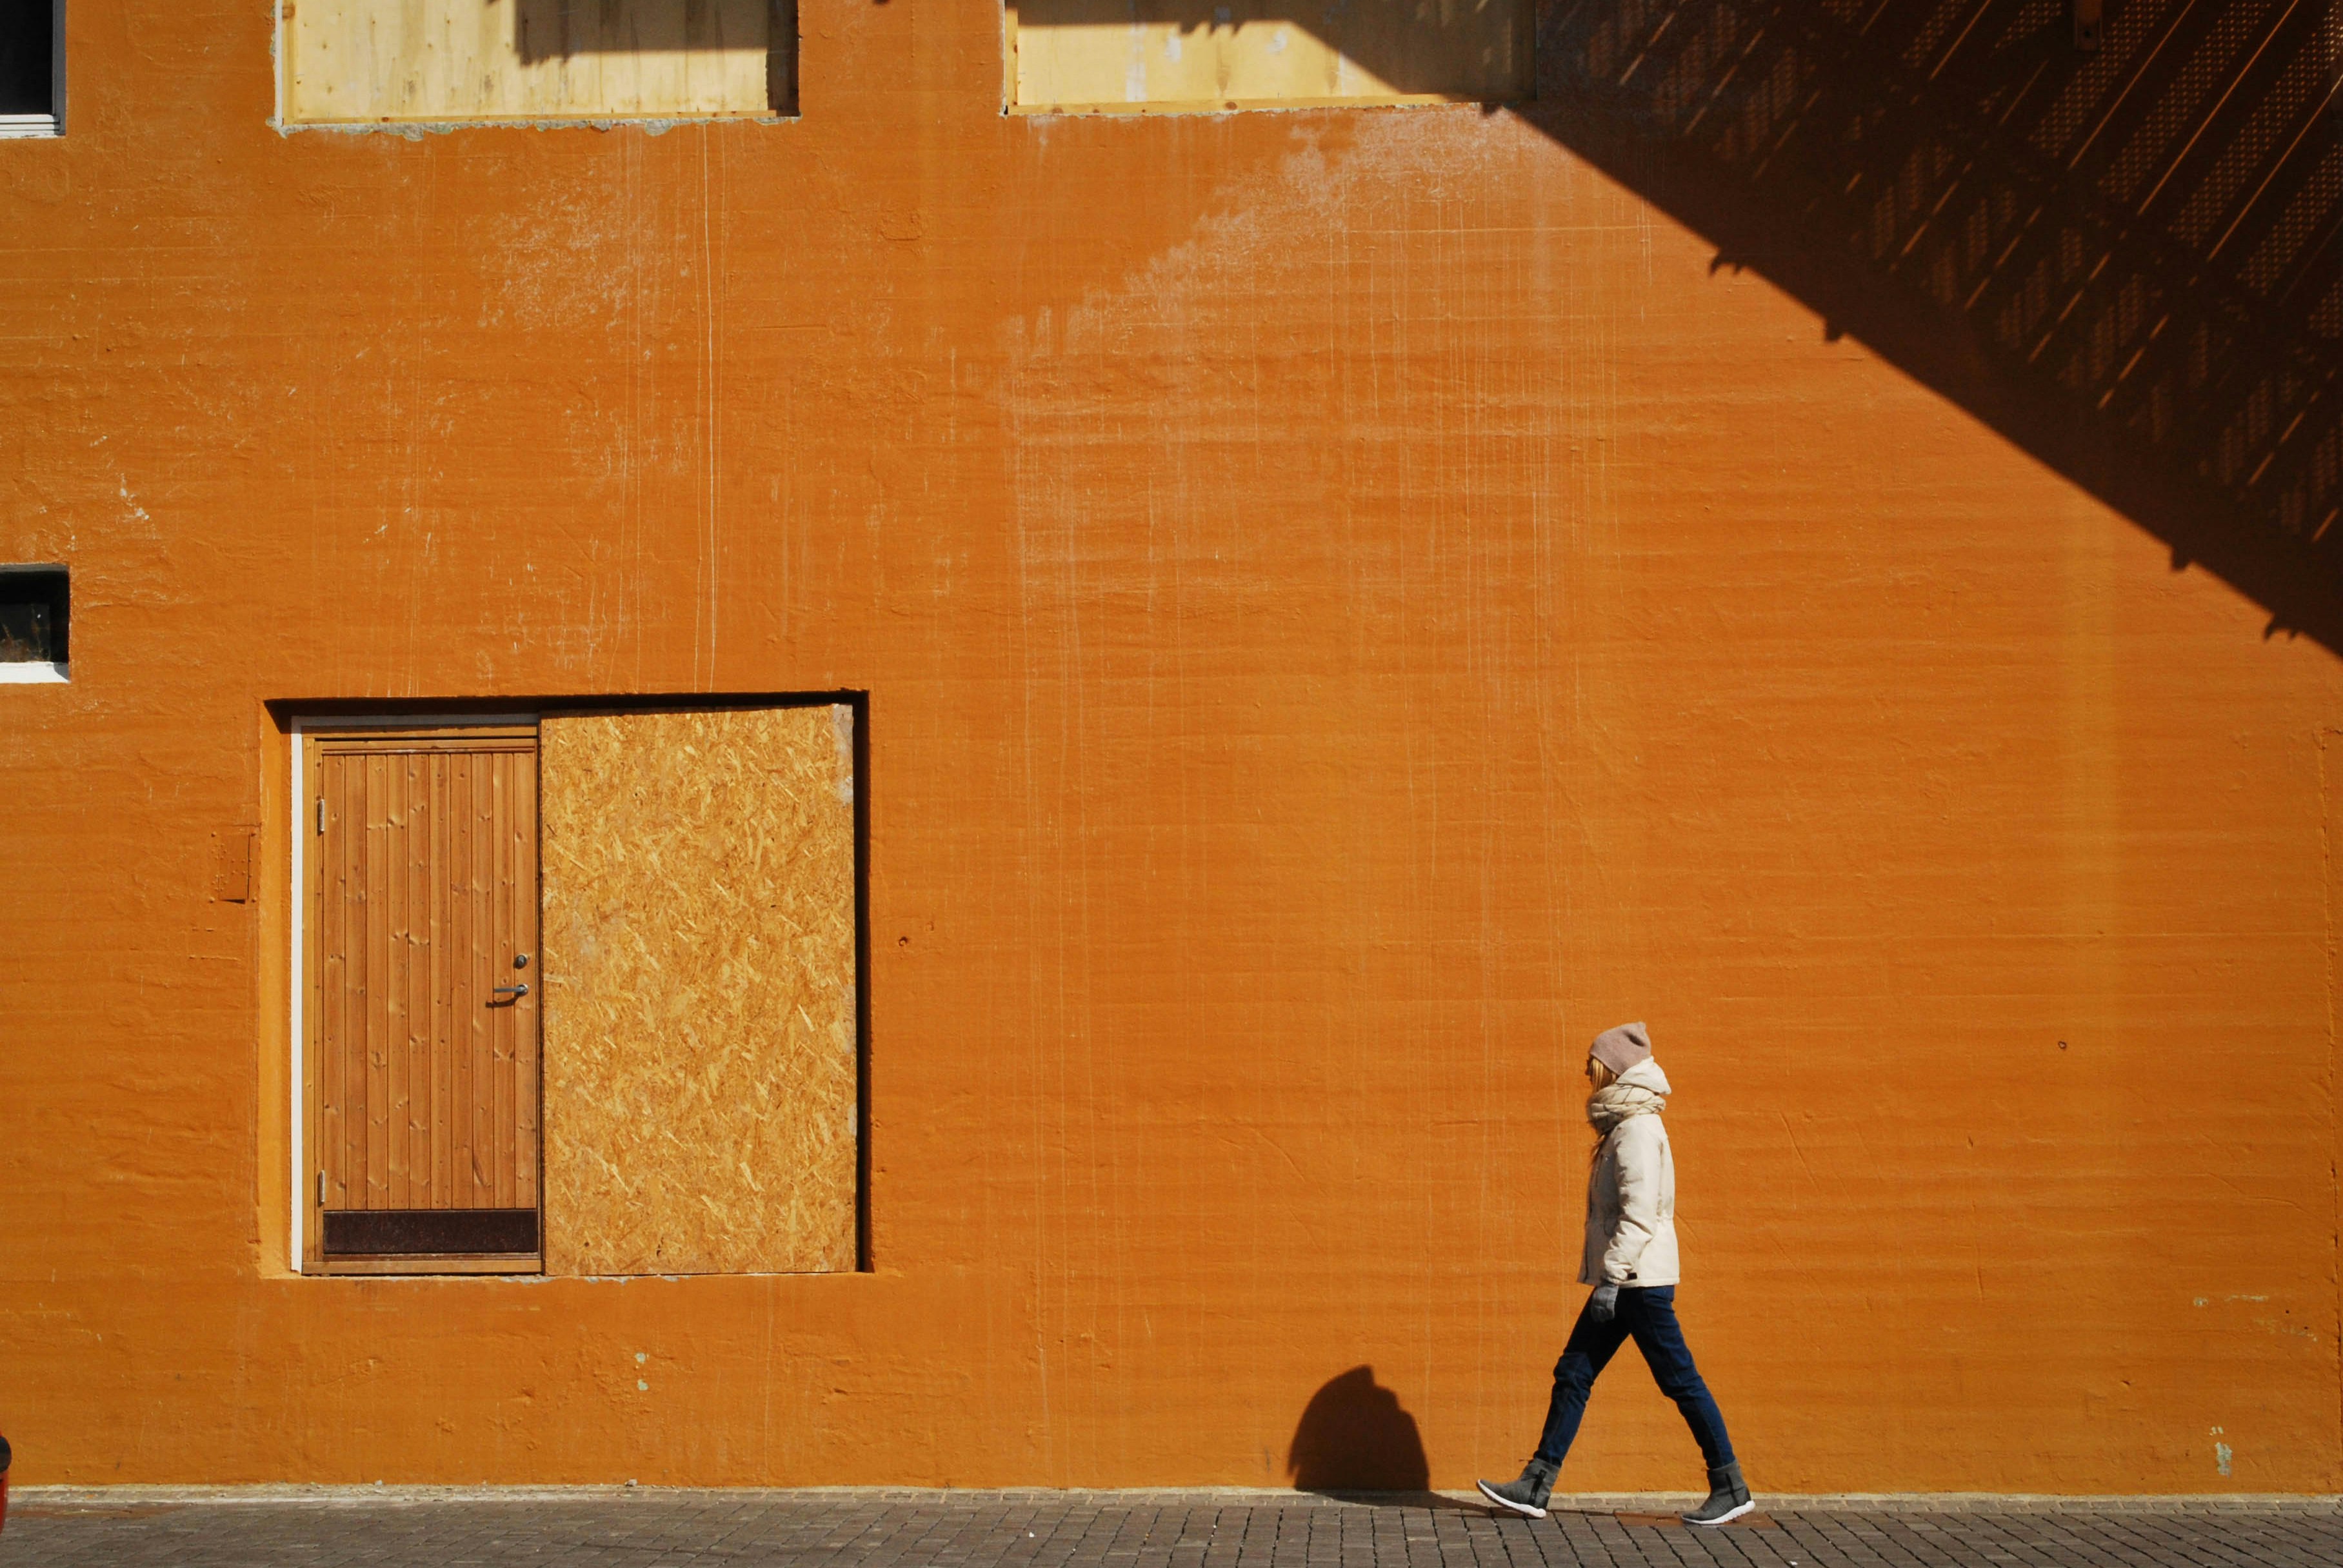 man walking beside orange building at daytime